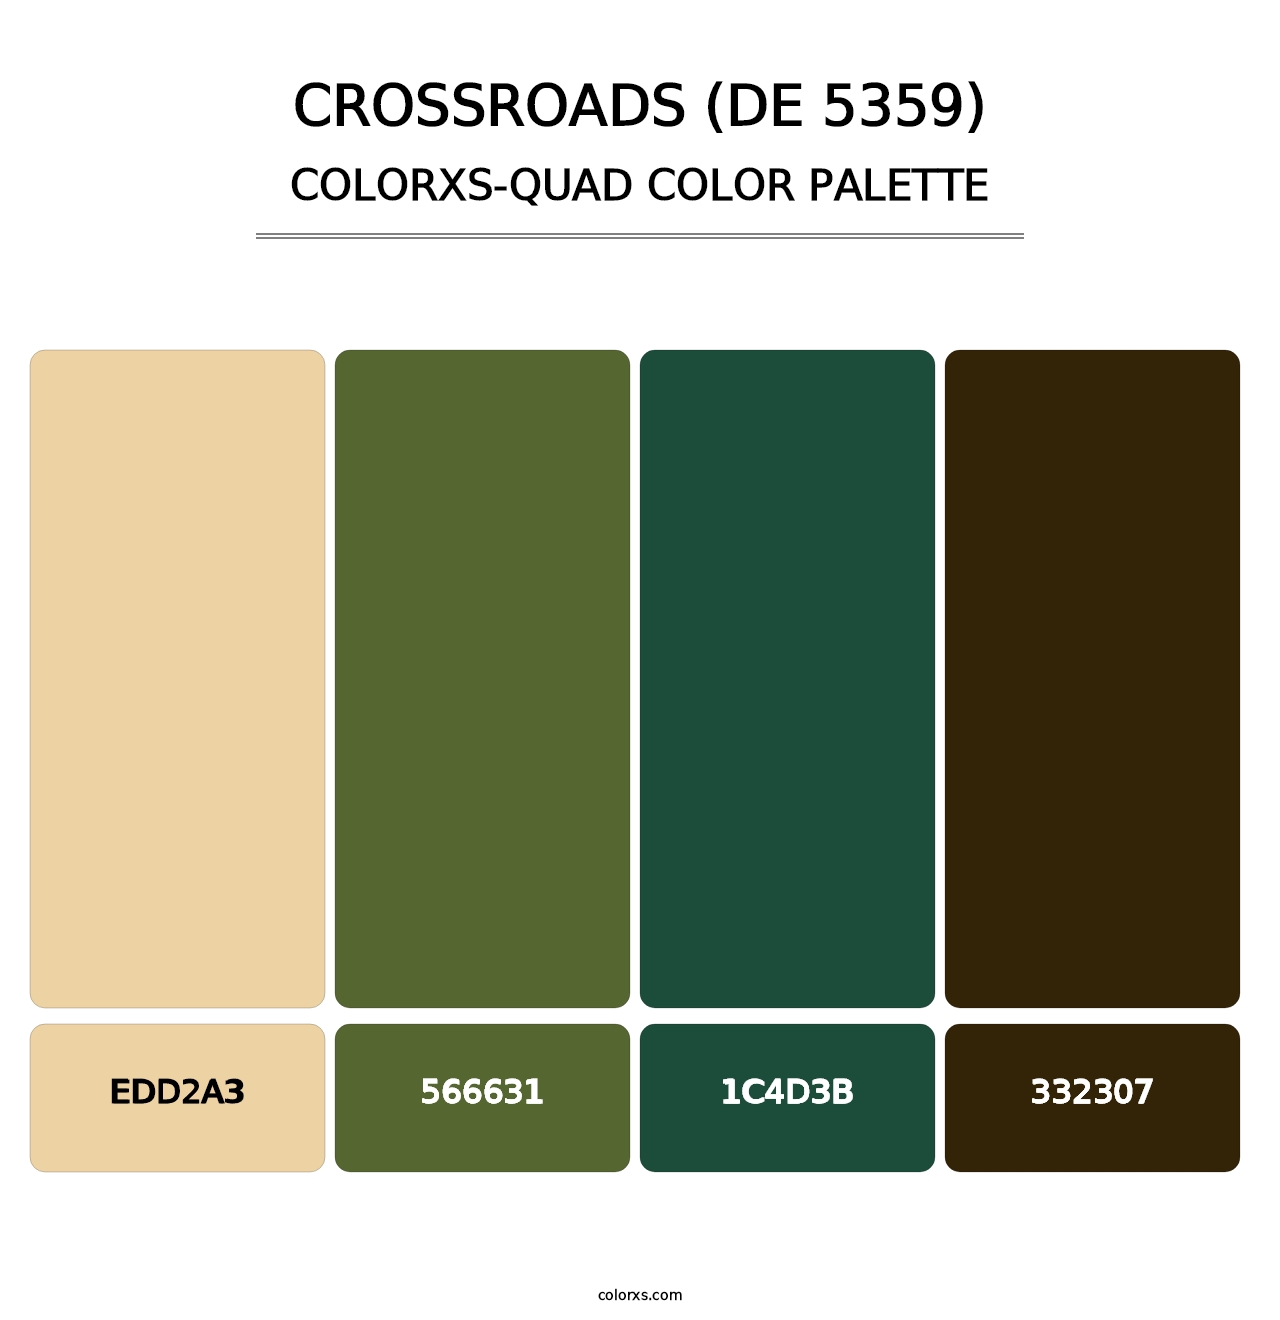 Crossroads (DE 5359) - Colorxs Quad Palette